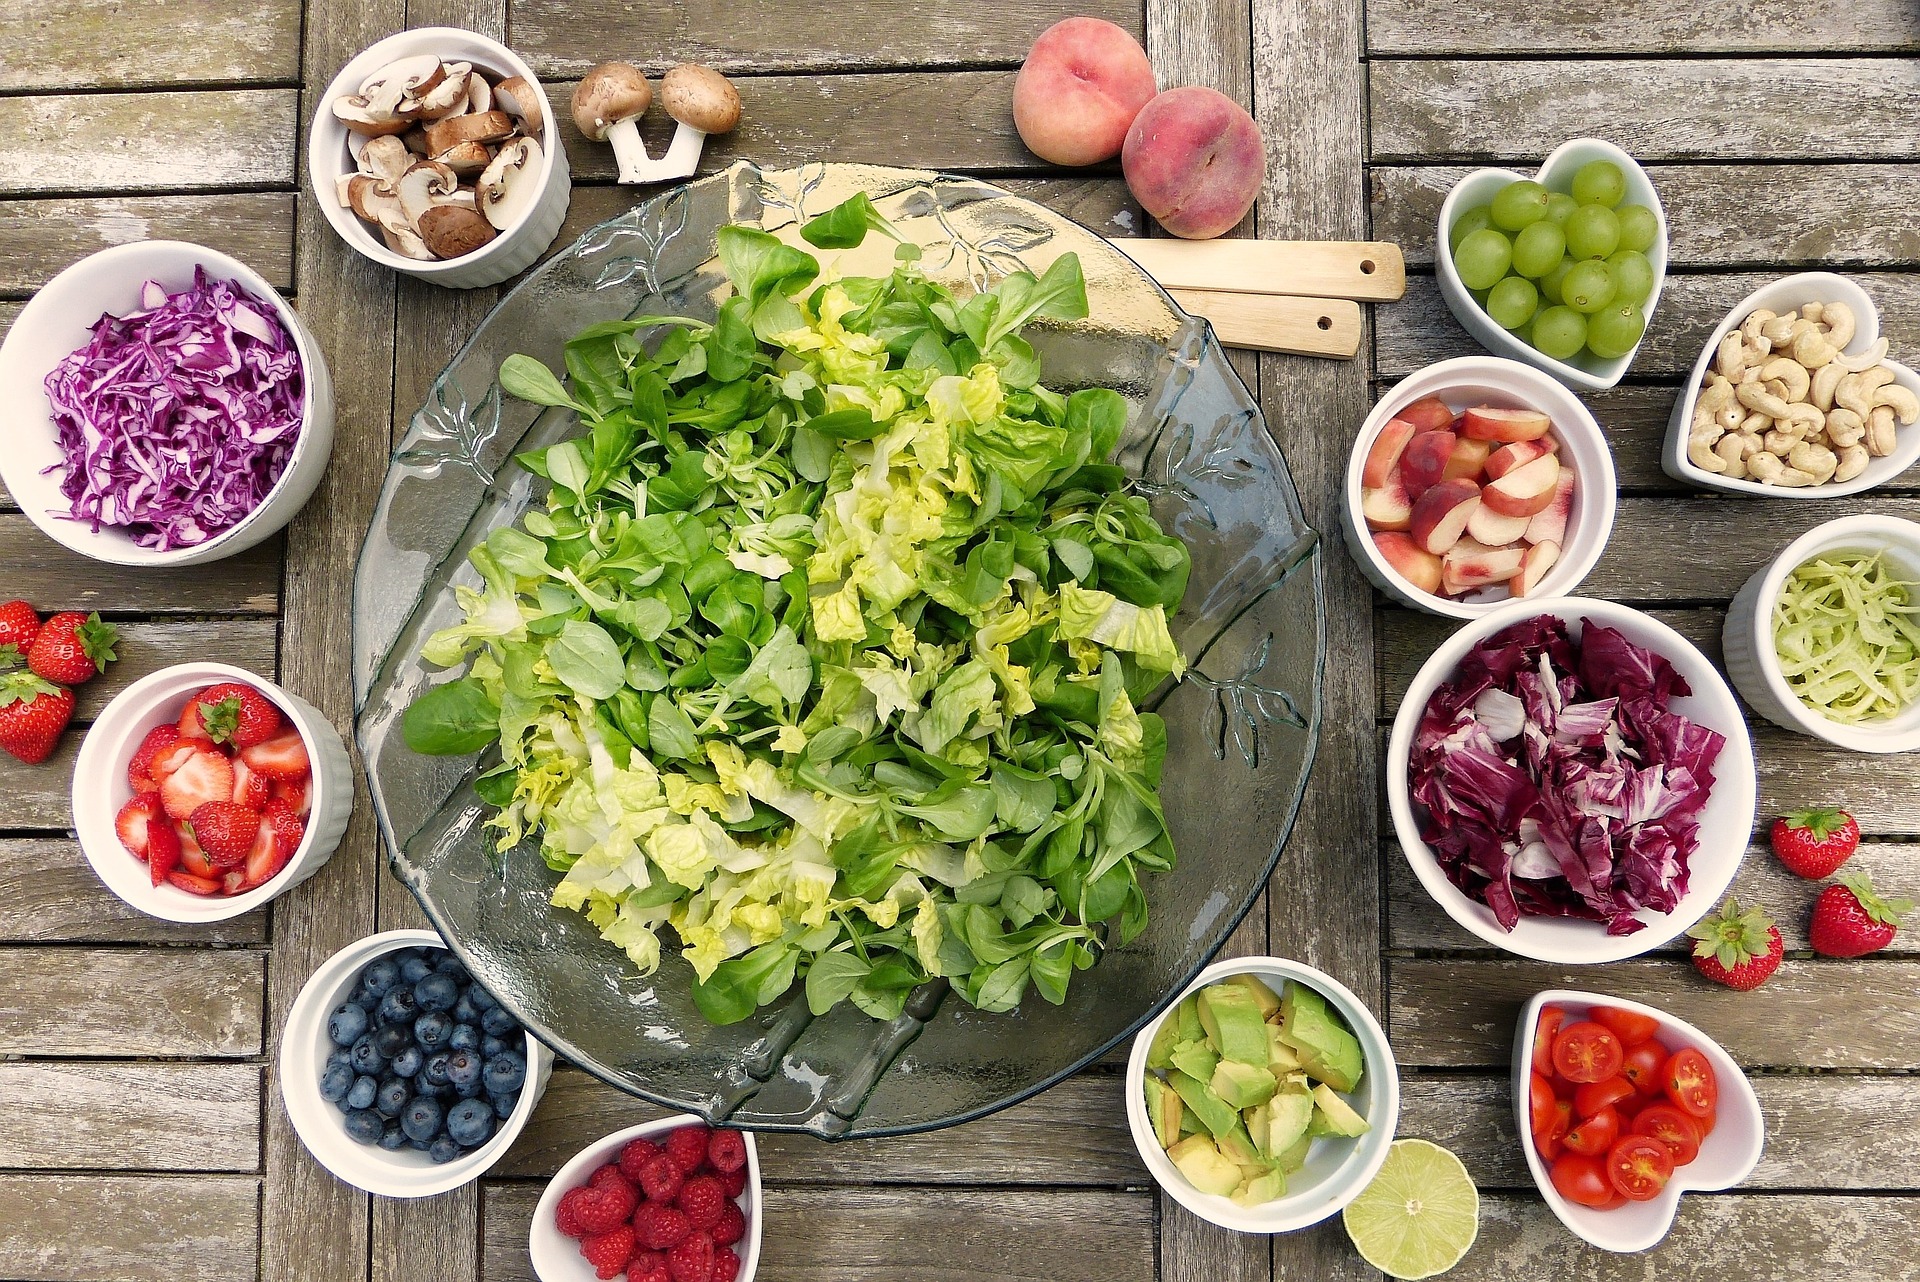 Porady dietetyczne – jak zdrowo odżywiać się, aby poprawić zdrowie i samopoczucie